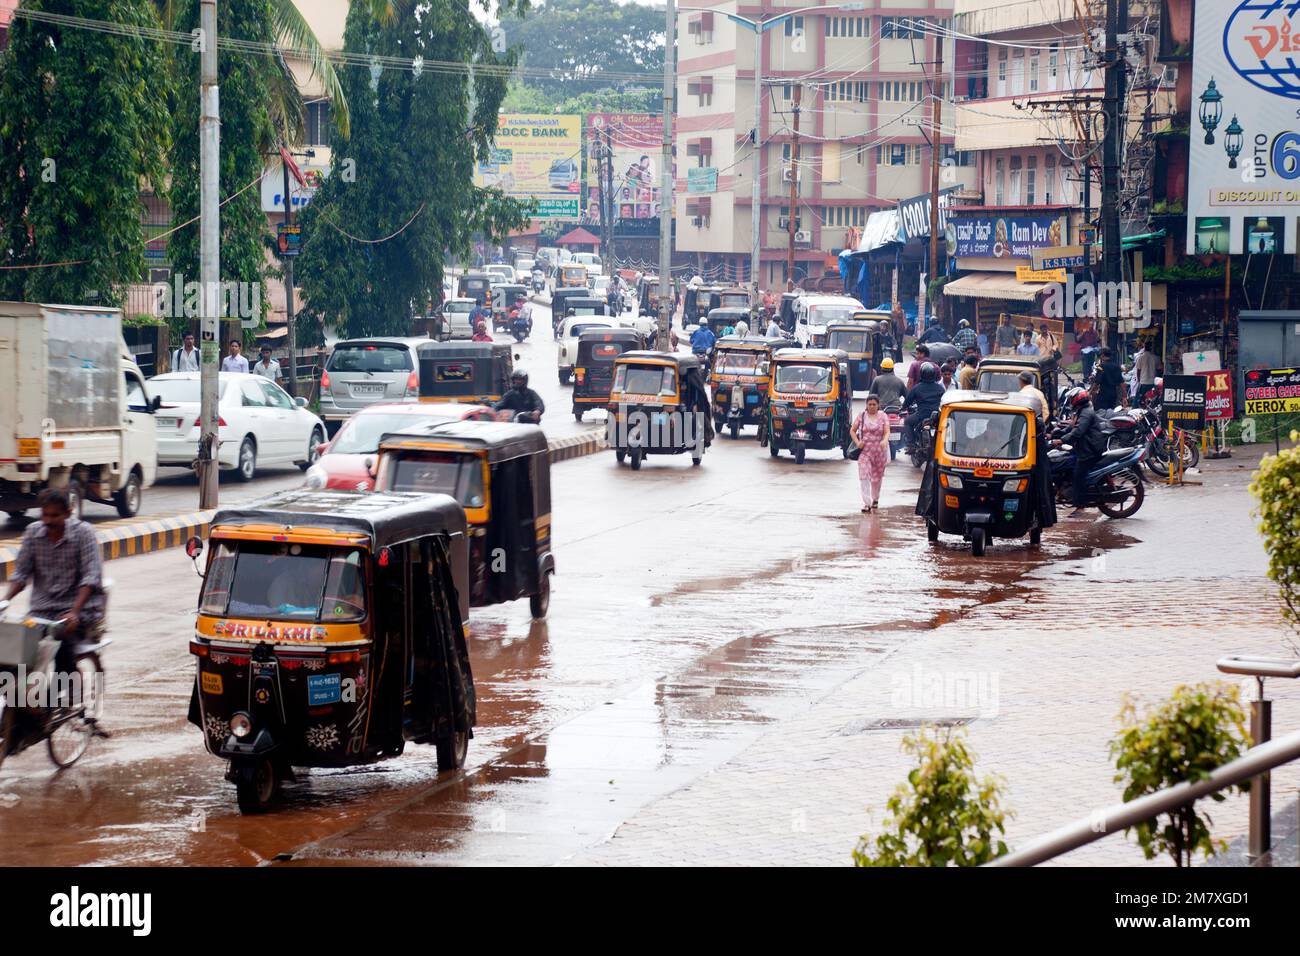 Mangalore, Indien - 3. September 2012: Der Verkehr auf den Straßen von Mangalore ist ein großes Durcheinander. Taxis, Mopeds und Fußgänger überqueren die Straße ohne Befehl Stockfoto